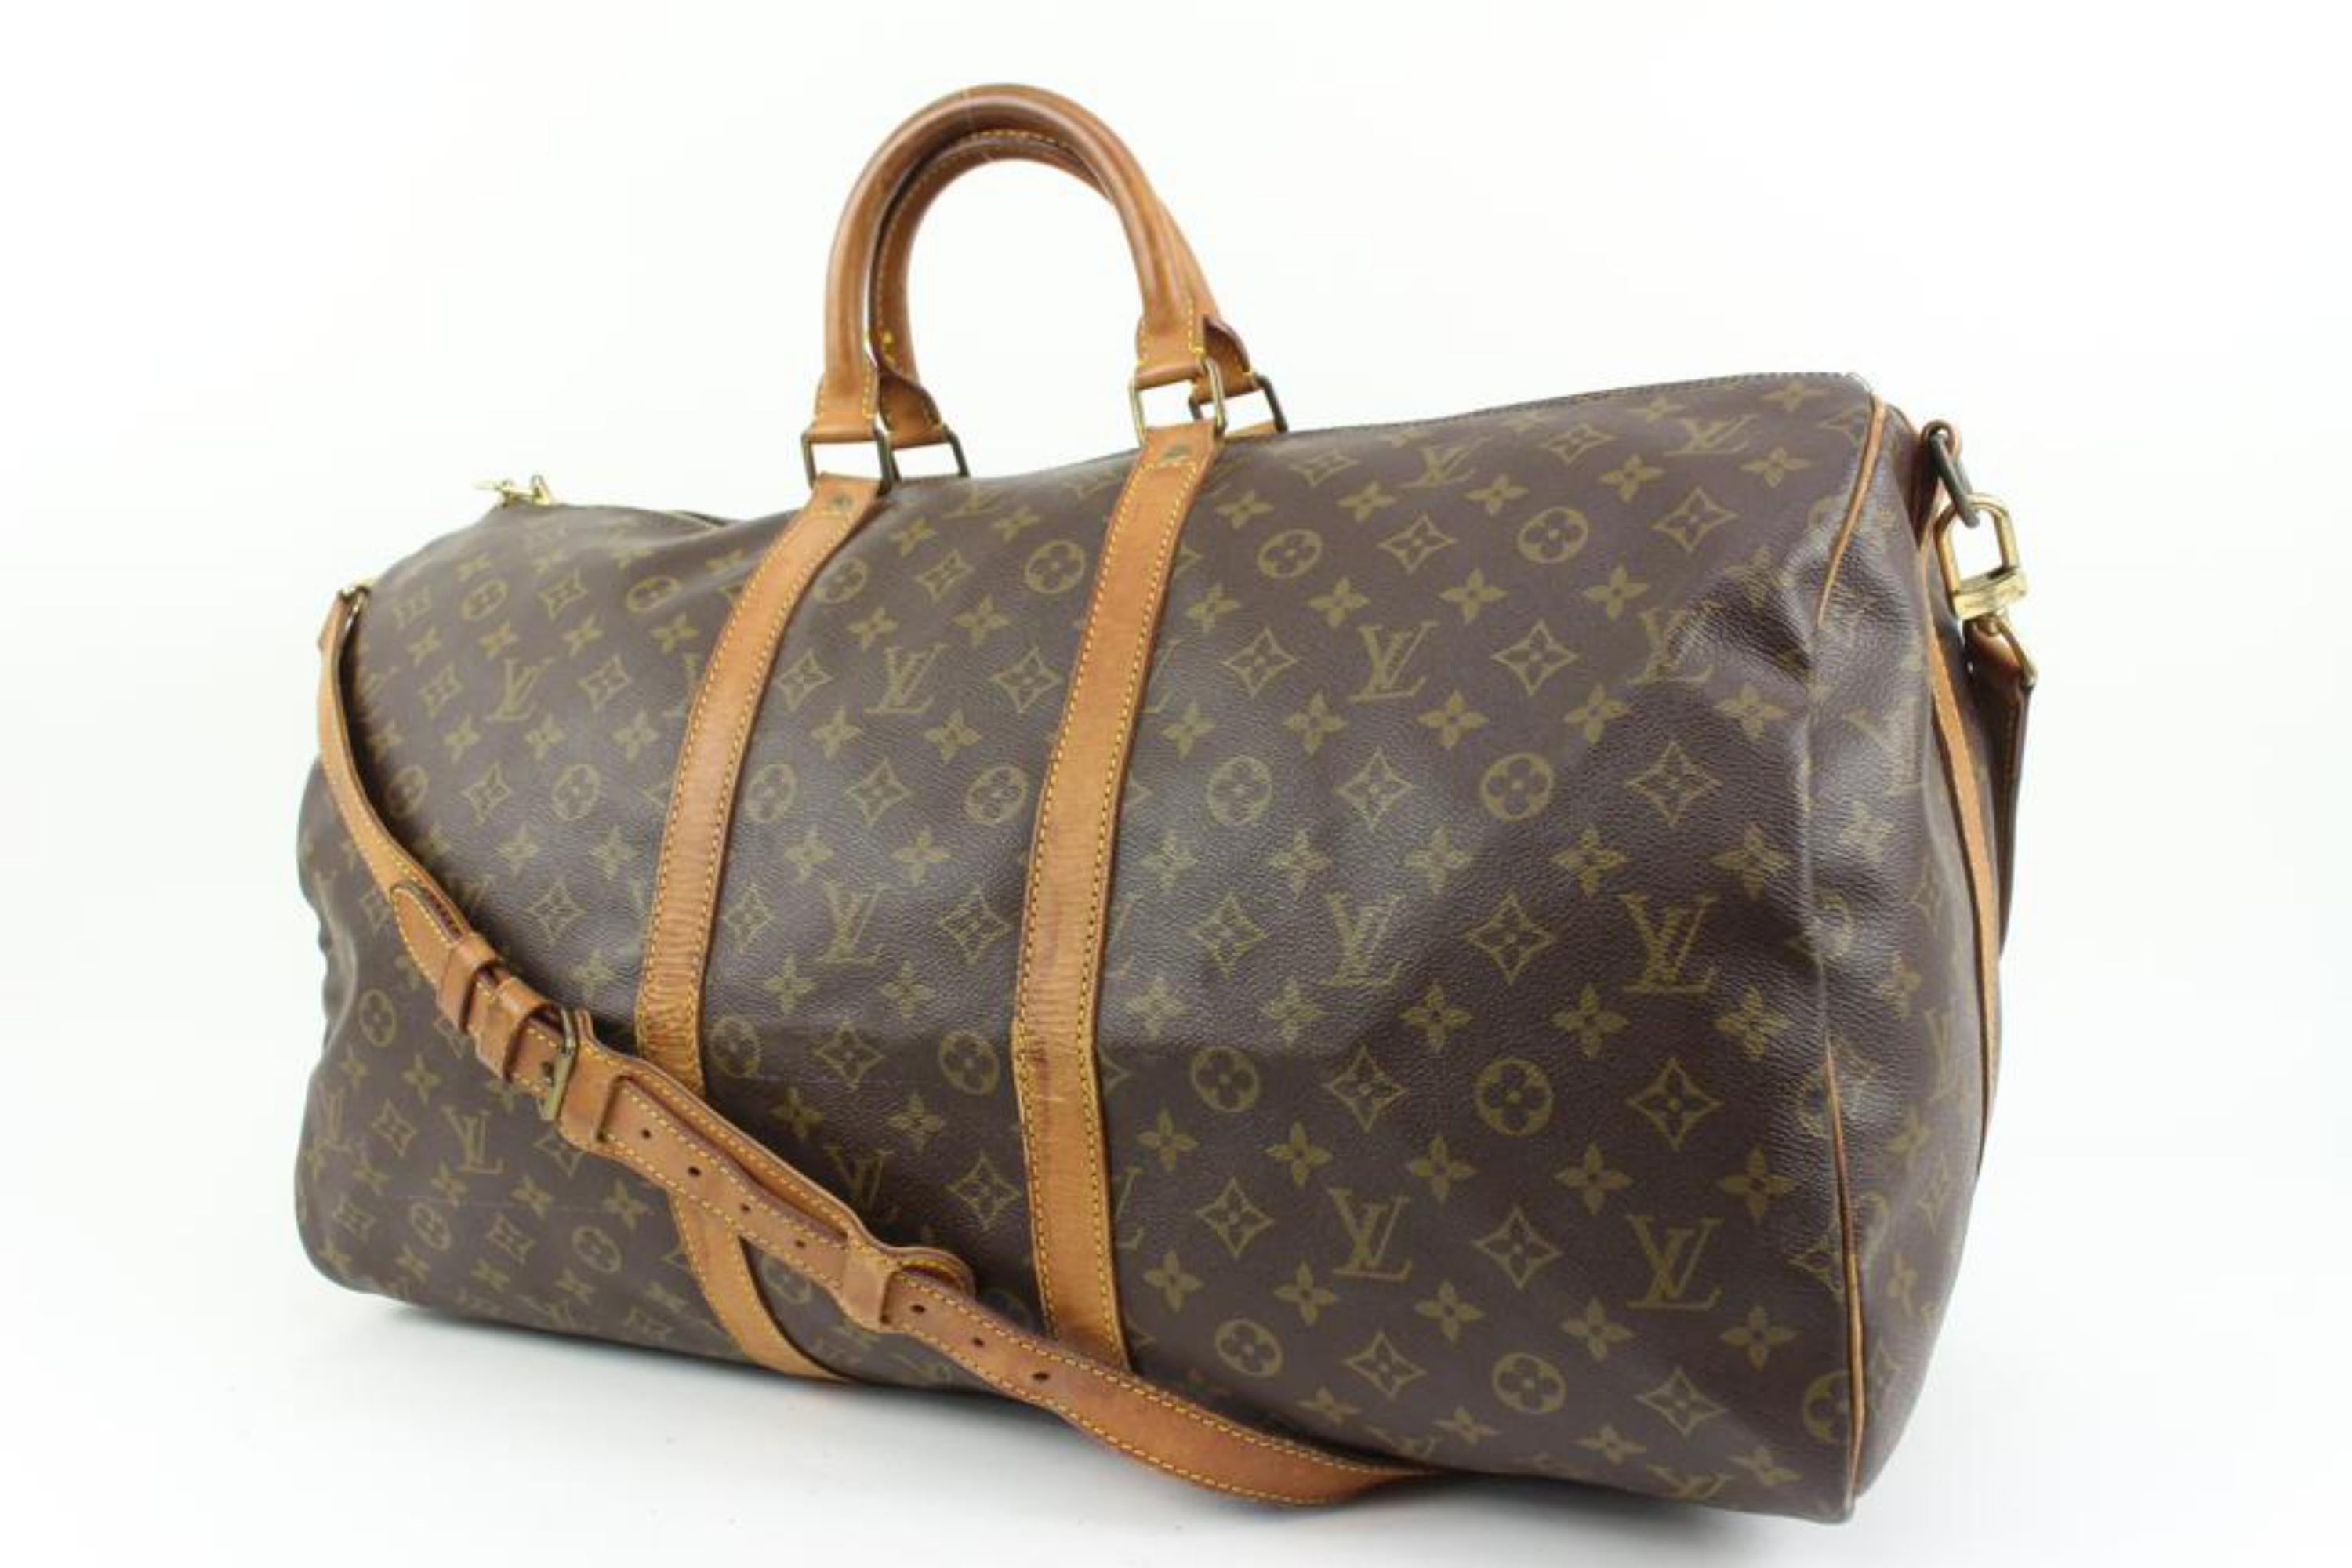 Louis Vuitton Monogram Keepall Bandouliere 55 Boston Duffle Bag with Strap (Sac de sport) 40lk420s
Code de date/Numéro de série : VI8904
Fabriqué en : France
Mesures : Longueur :  largeur de 22 pouces :  10